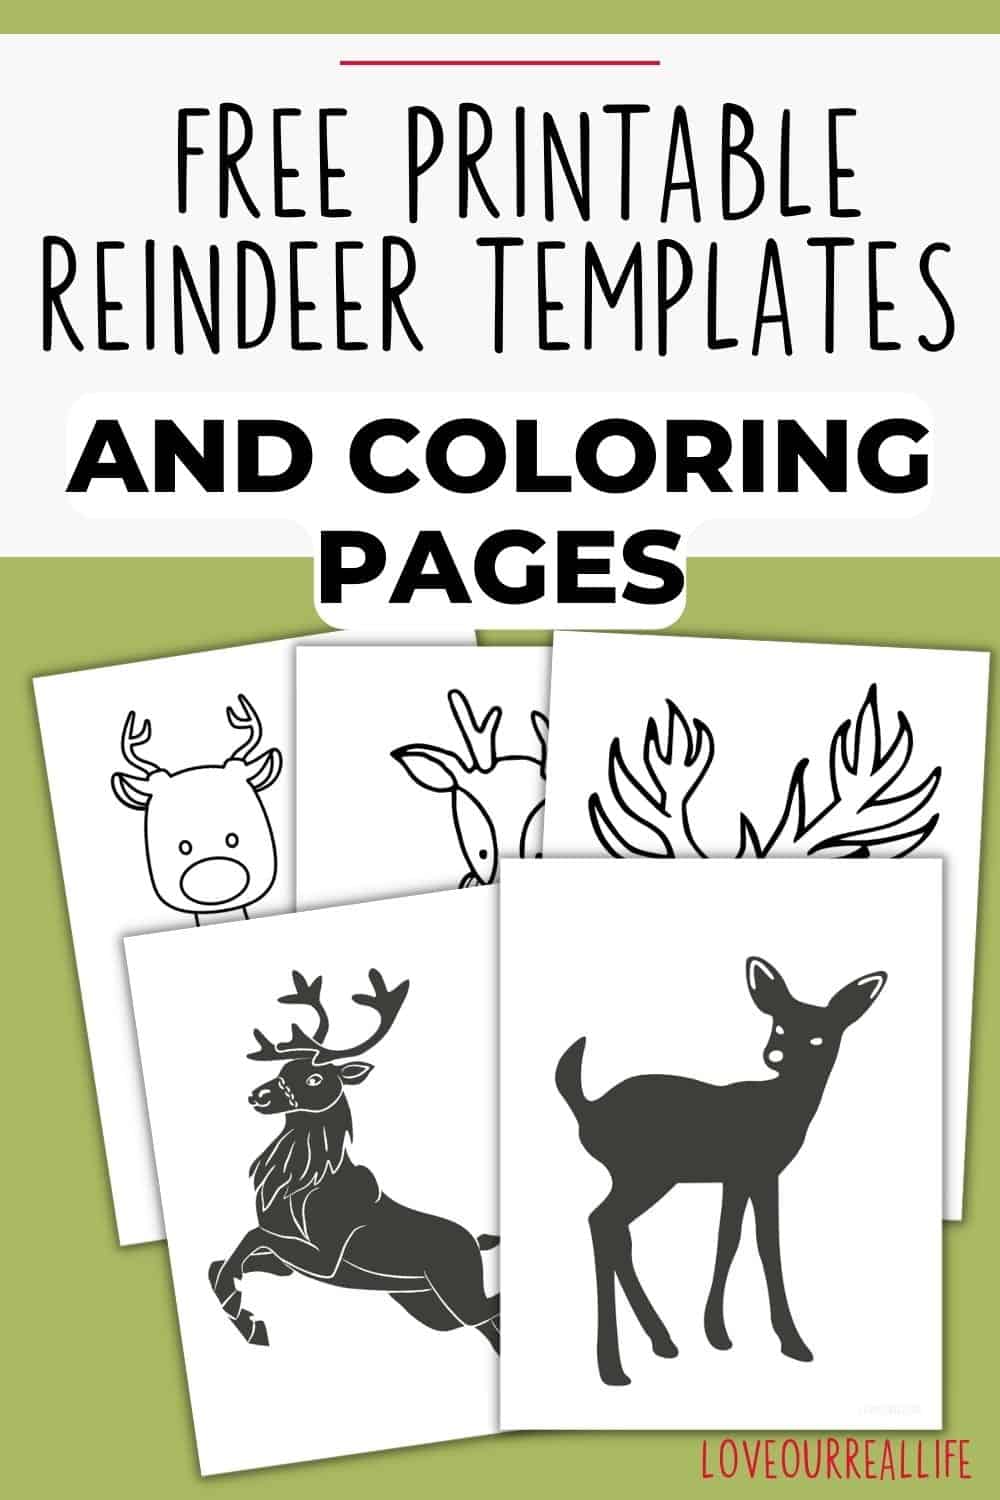 Free printable reindeer template